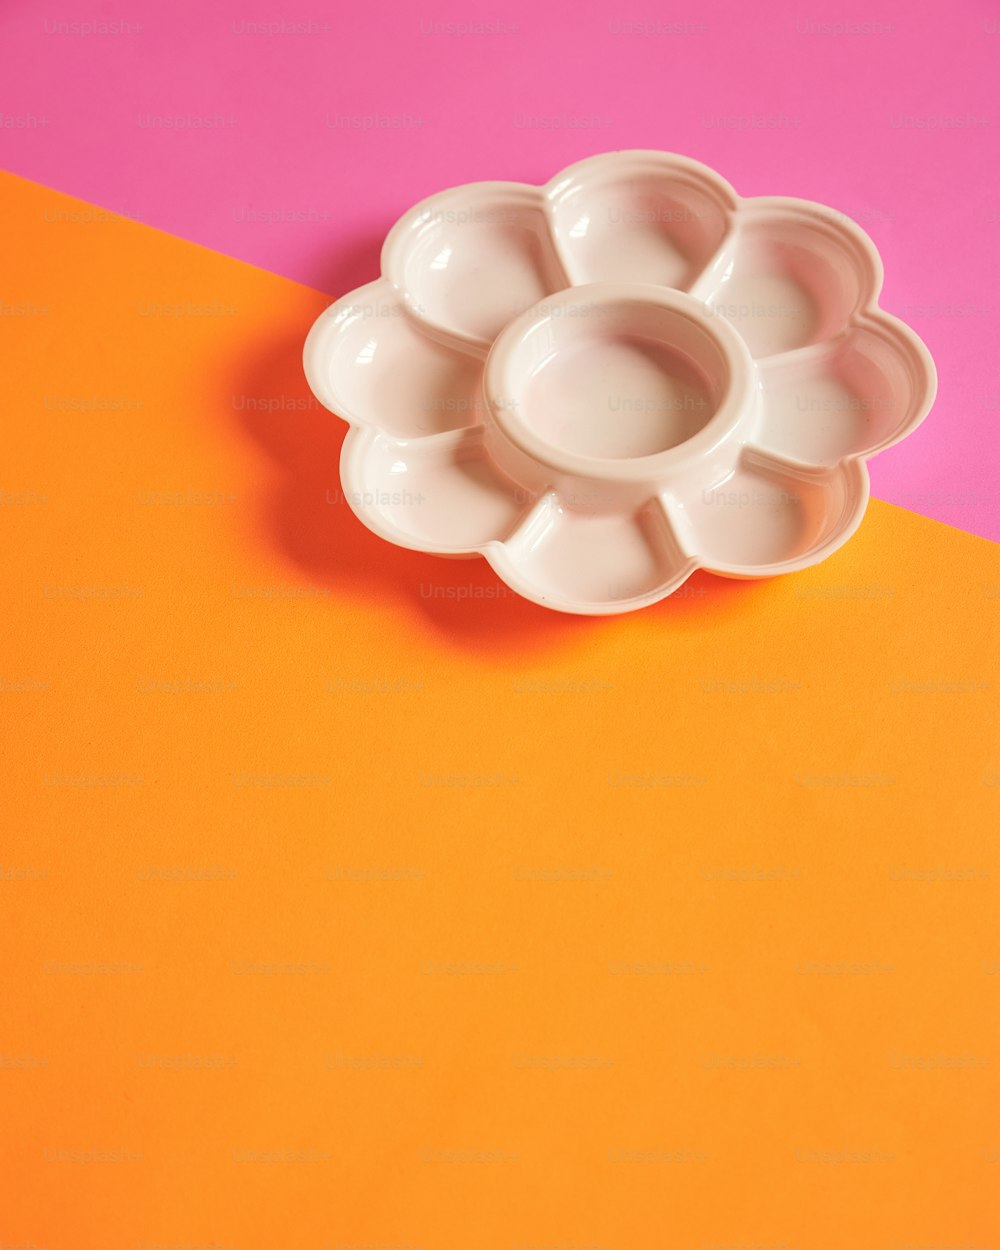 un bol en forme de fleur blanche posé sur une table orange et rose